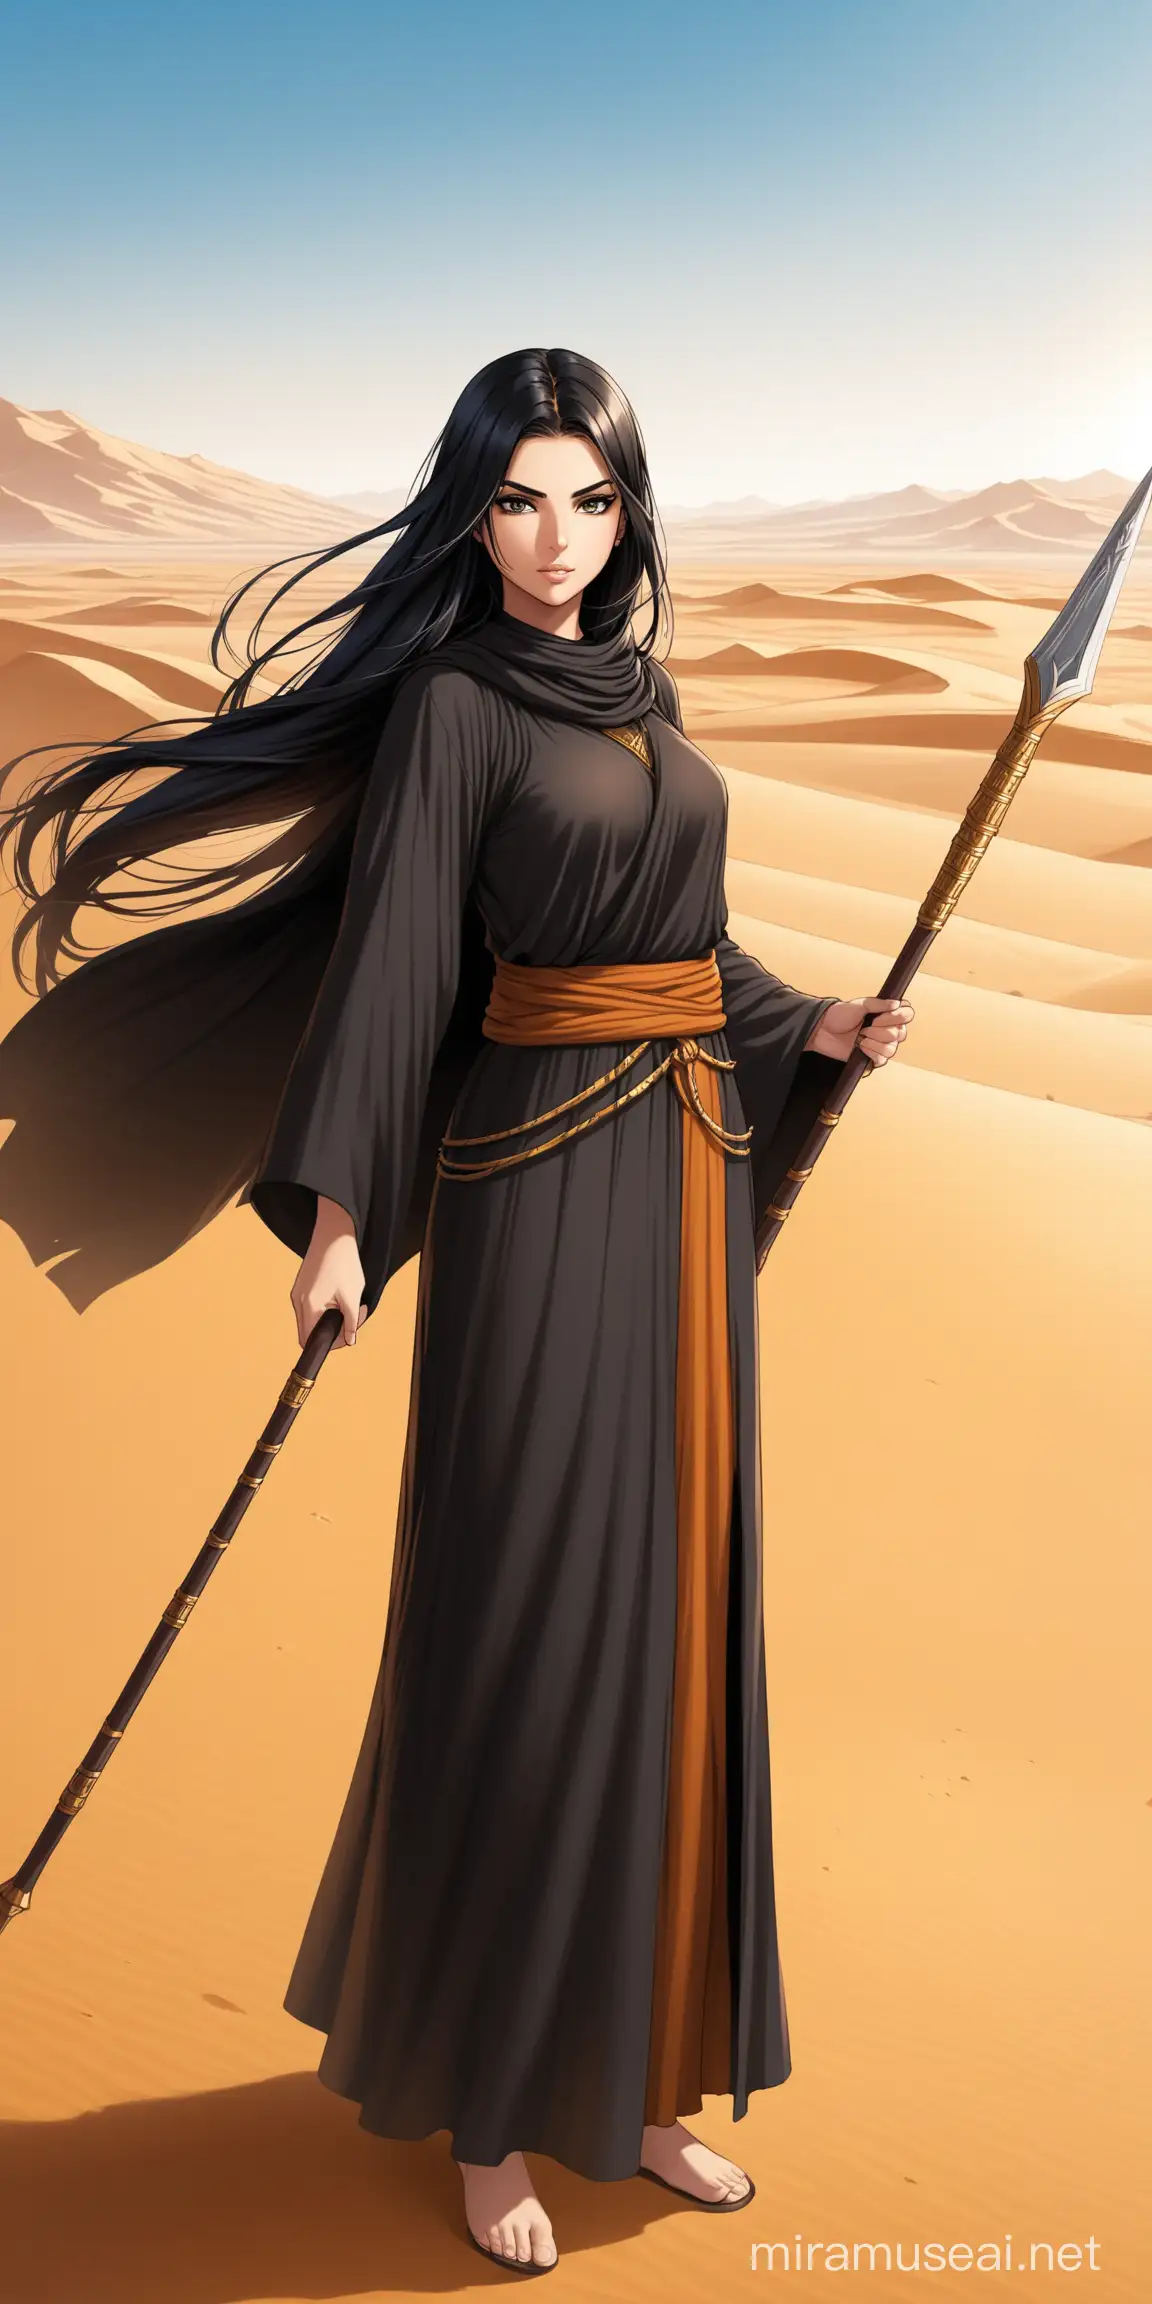 Arab Warrior Monk Girl Standing with Spear in Desert